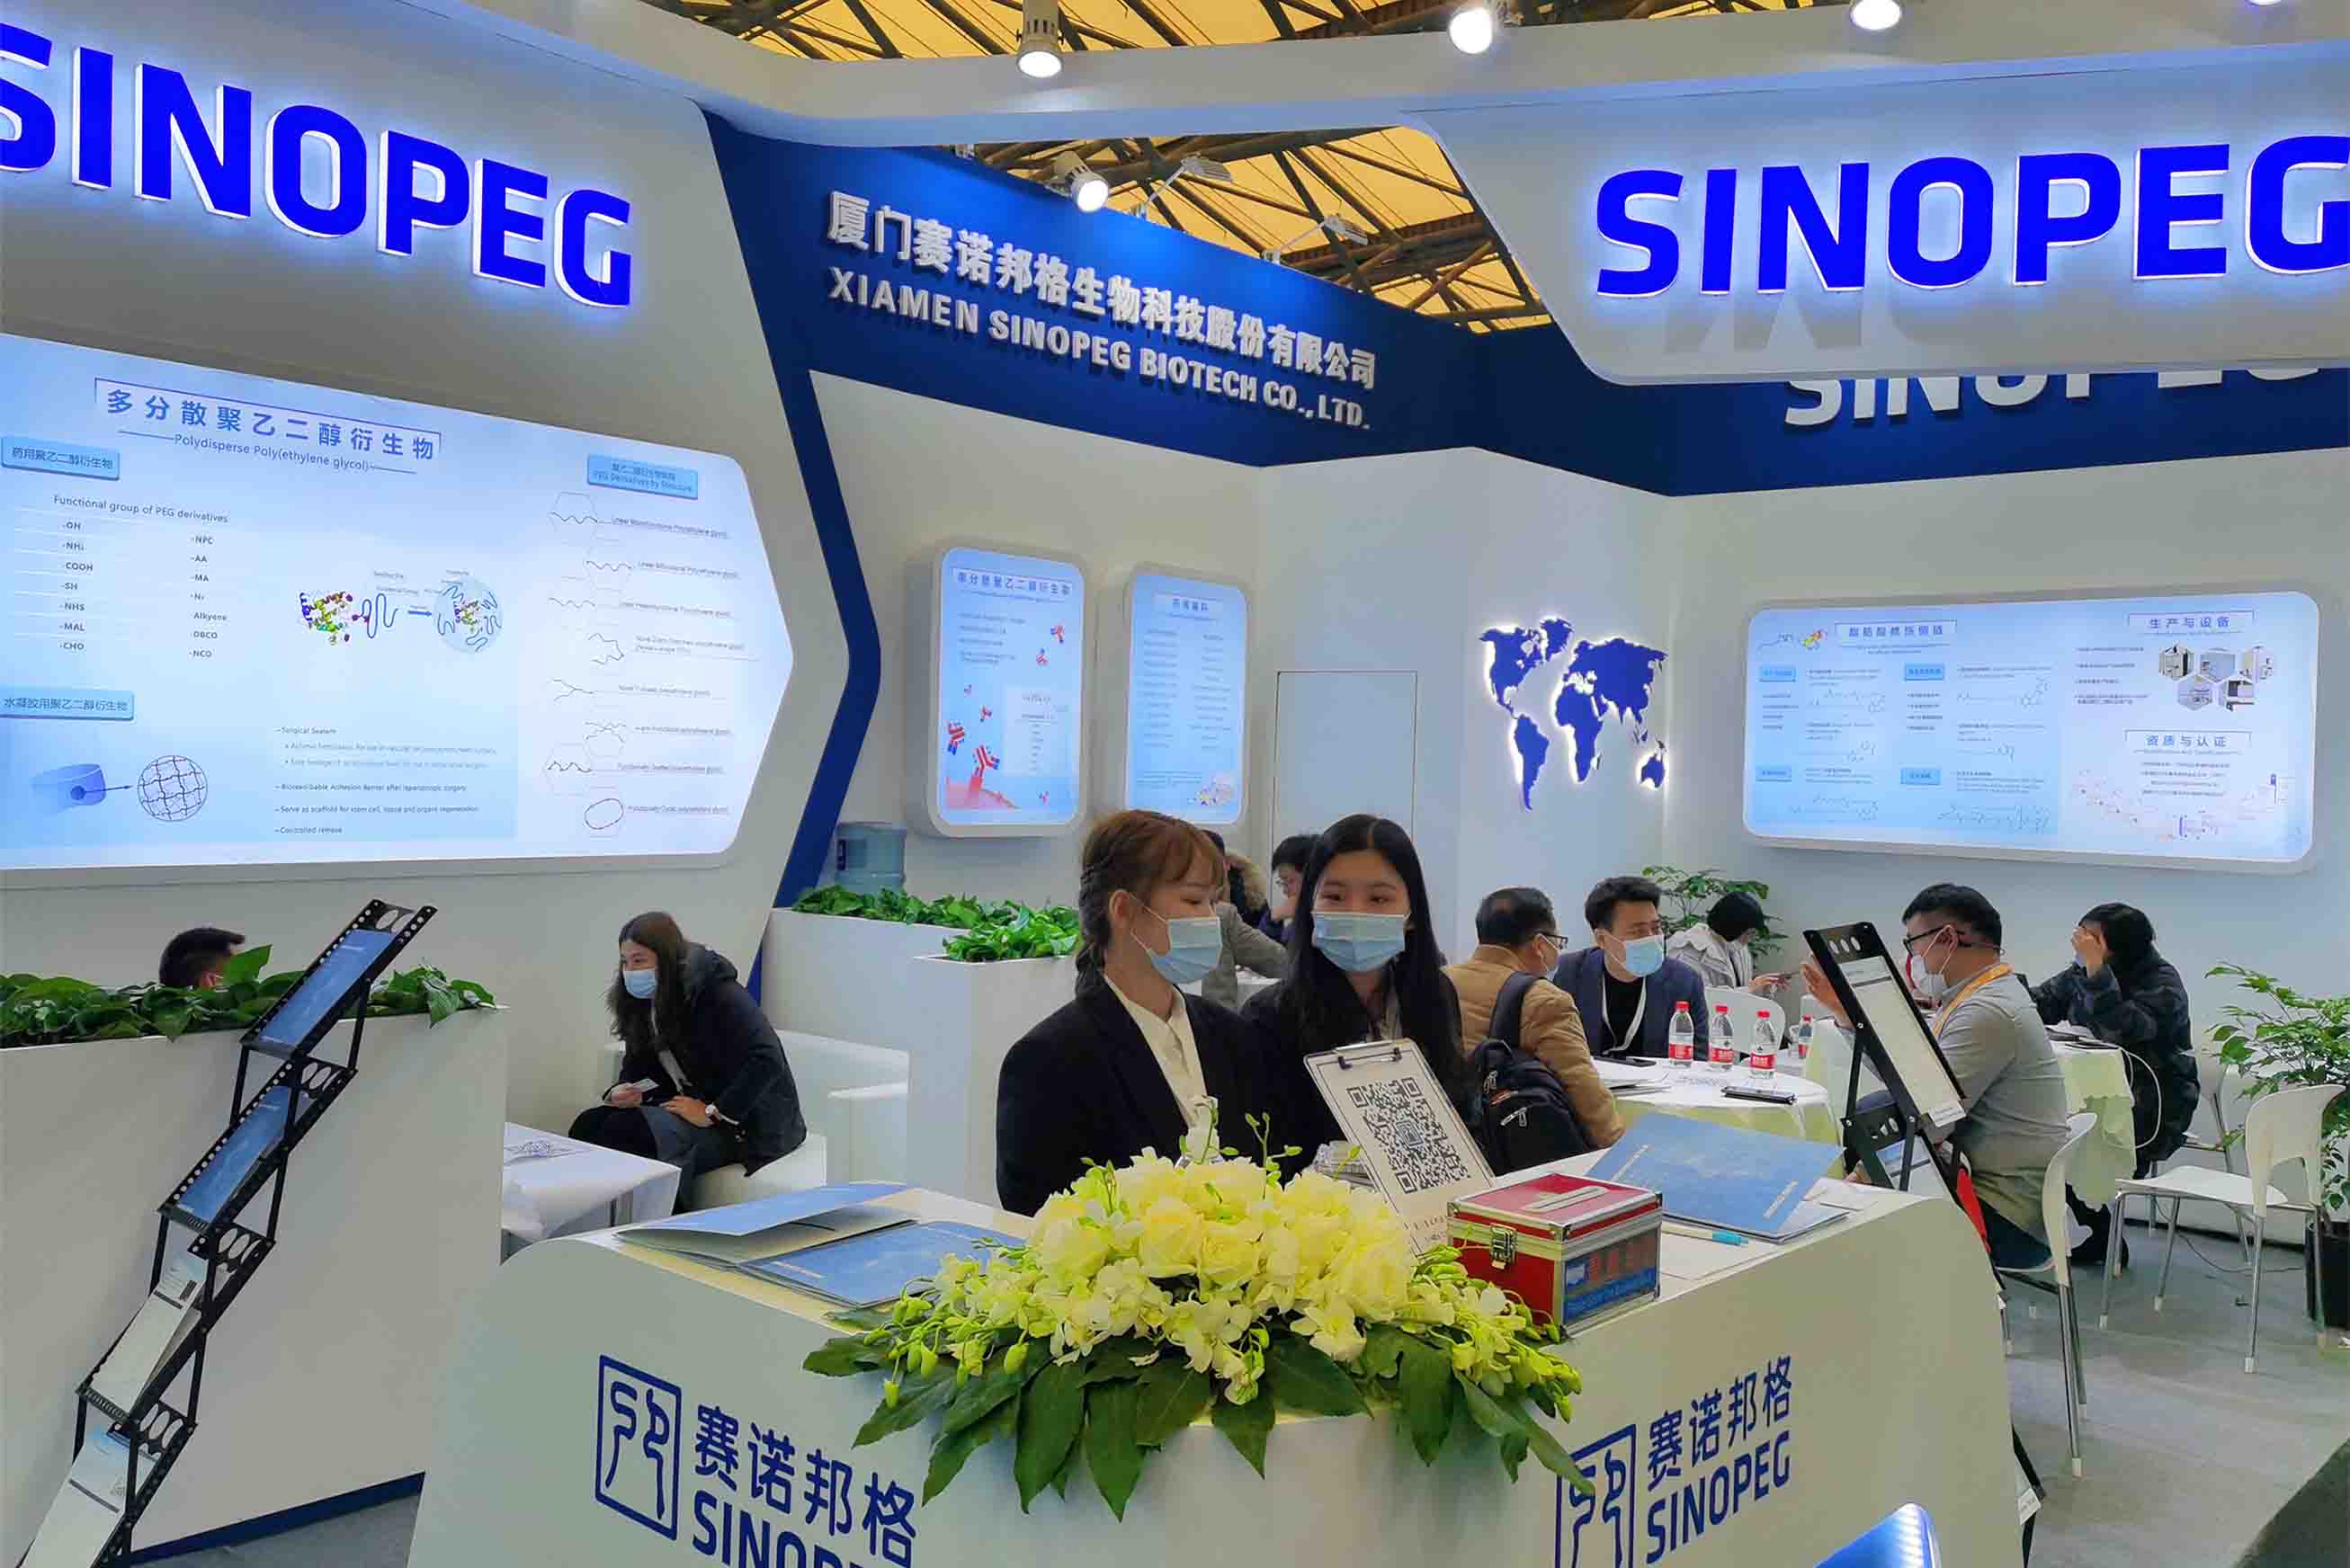  SINOPEG erzielte erhebliche Erfolge in CPhI China 2020 